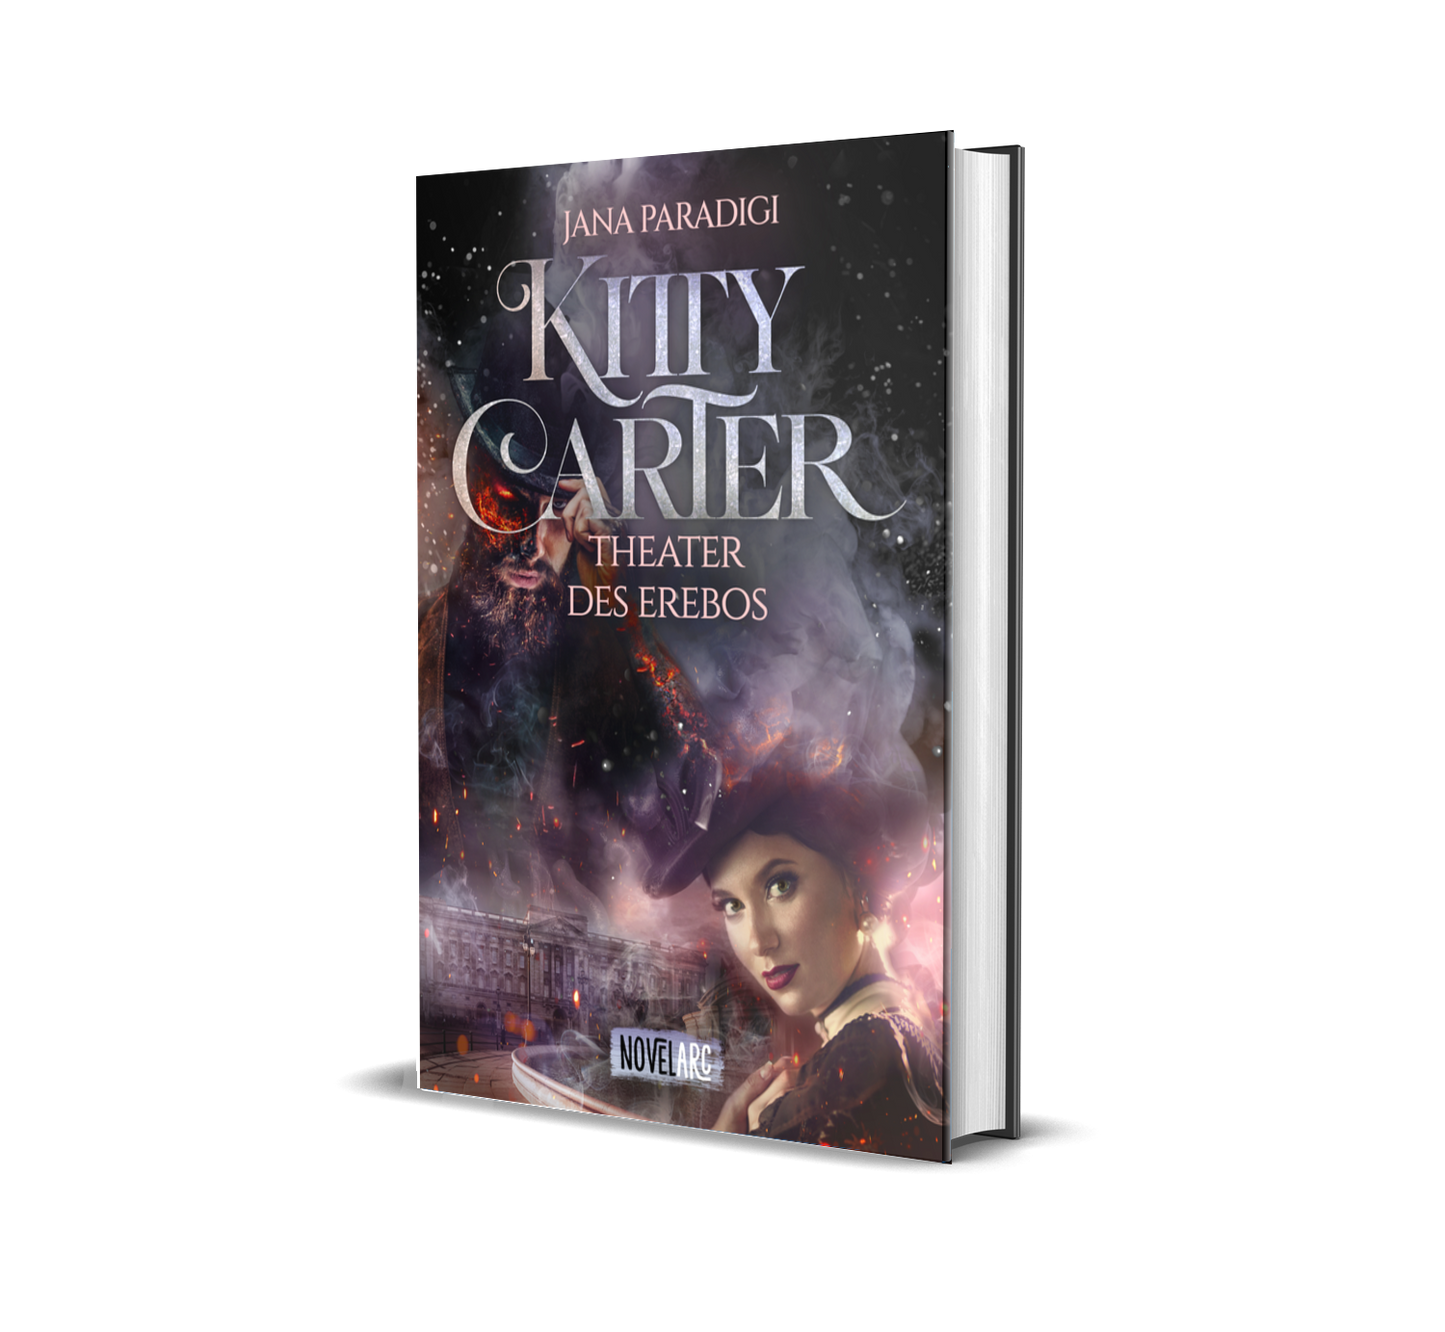 [signiert] Kitty Carter - Theater des Erebos: Ein historische Urban-Fantasy-Krimi, England 1862, voller Spannung, Mystik und prickelnder Gefühle